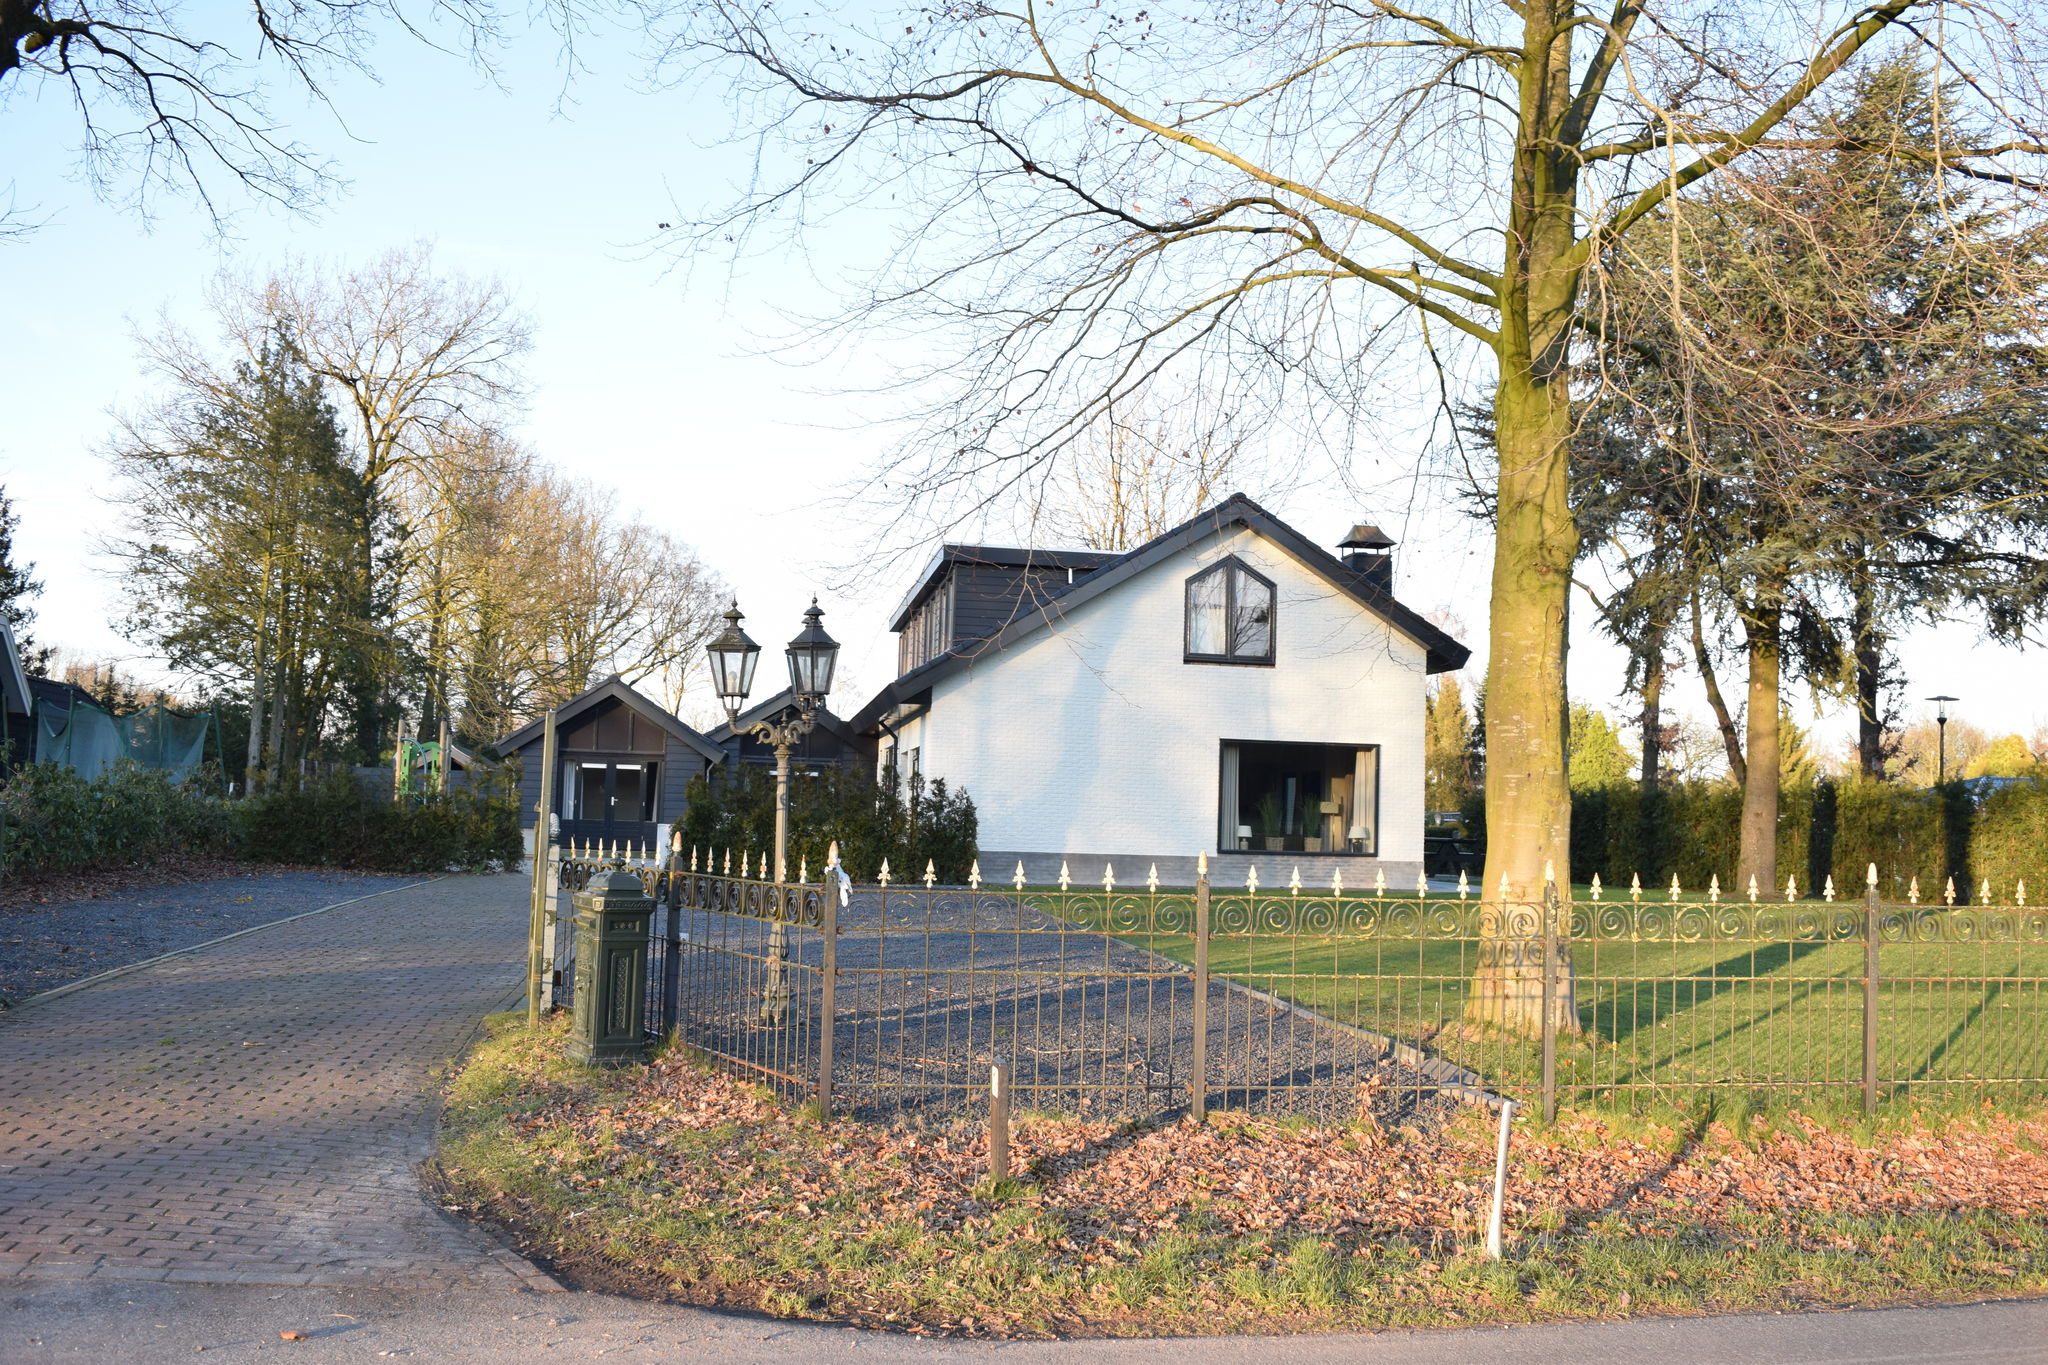 Belle villa près de la Veluwe